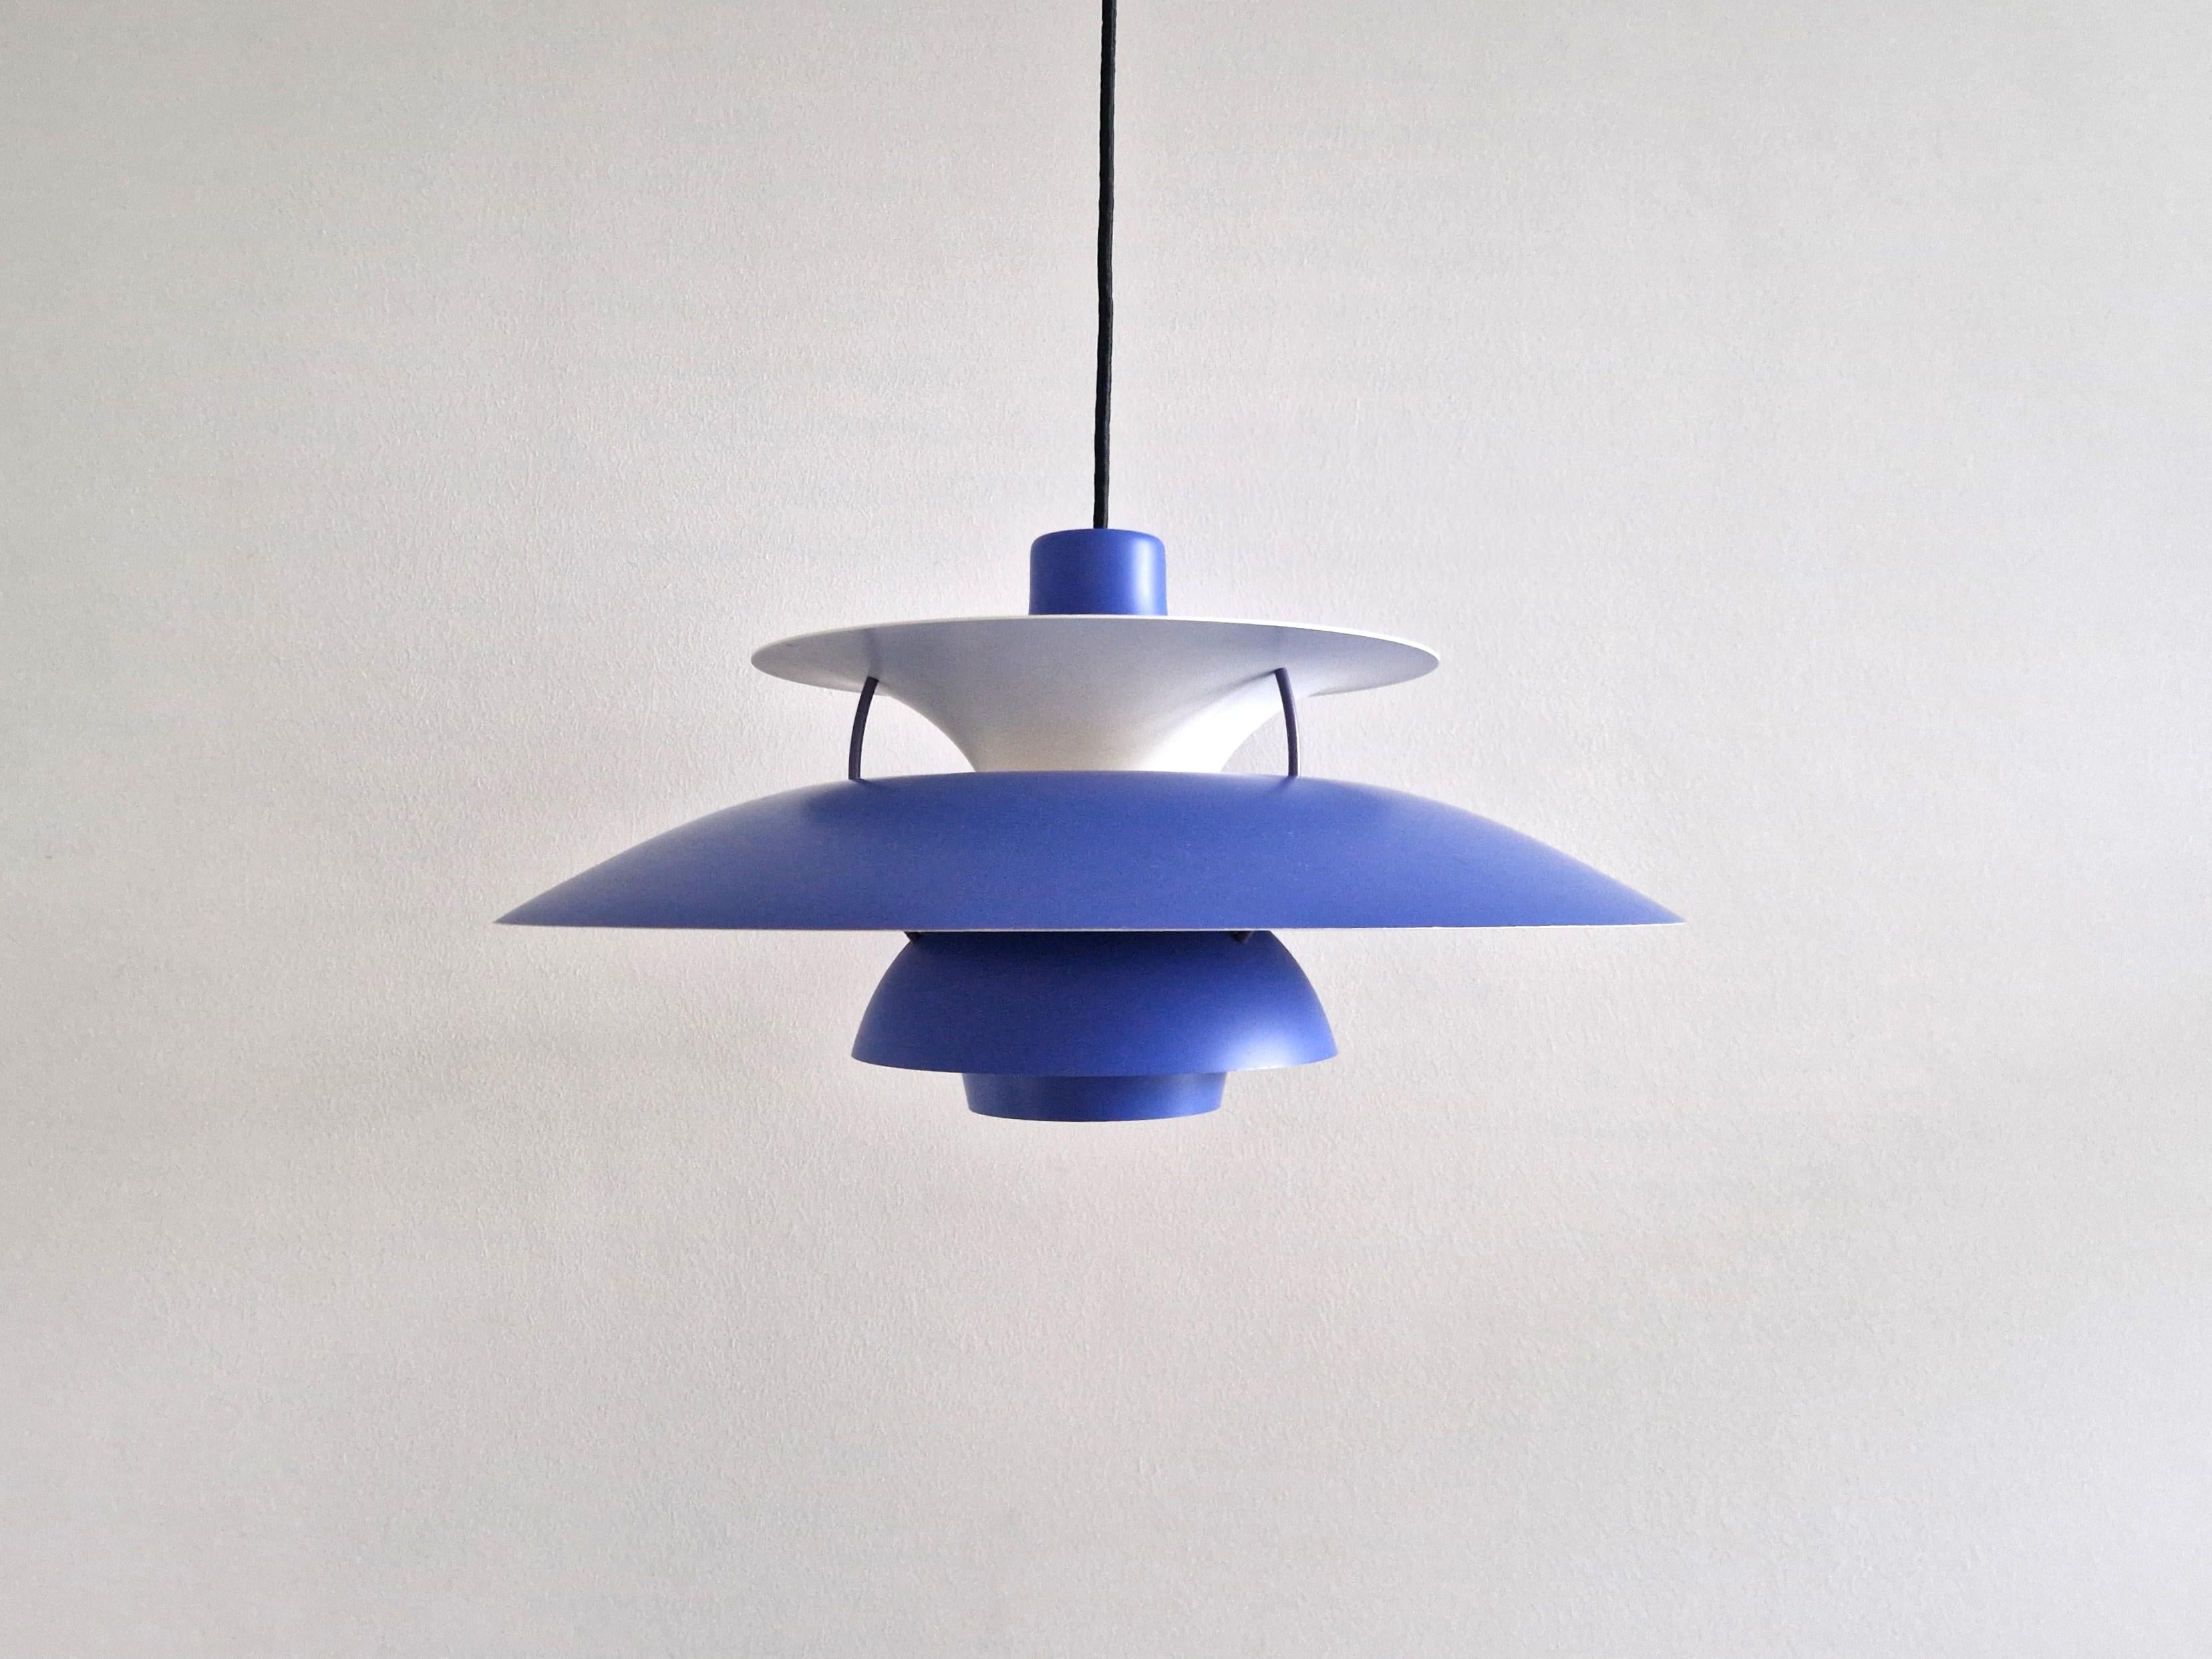 La lampe suspendue PH5, modèle intemporel, a été conçue par Poul Henningsen pour Louis Poulsen en 1956. Cette lampe a un abat-jour bleu violet avec une plaque circulaire rouge pour la douille et l'abat-jour supérieur. Le Label indique que cette